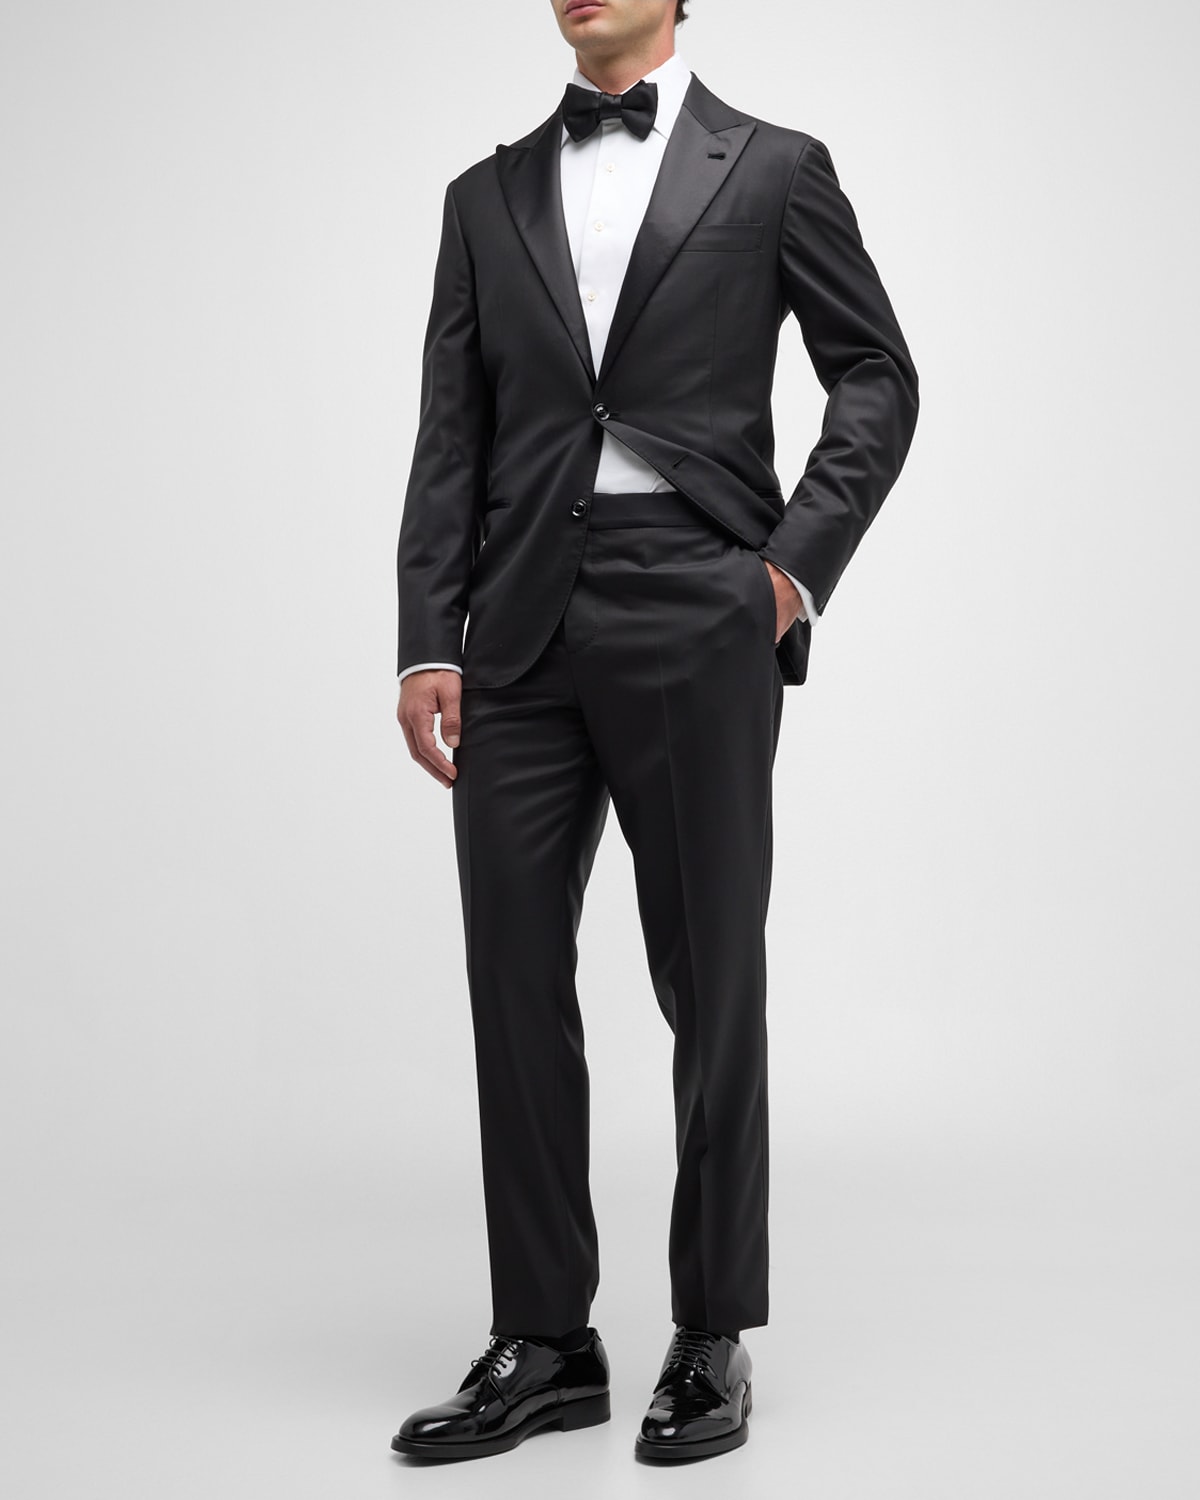 ZEGNA Men's Peak-Lapel One-Button Wool Tuxedo | Neiman Marcus